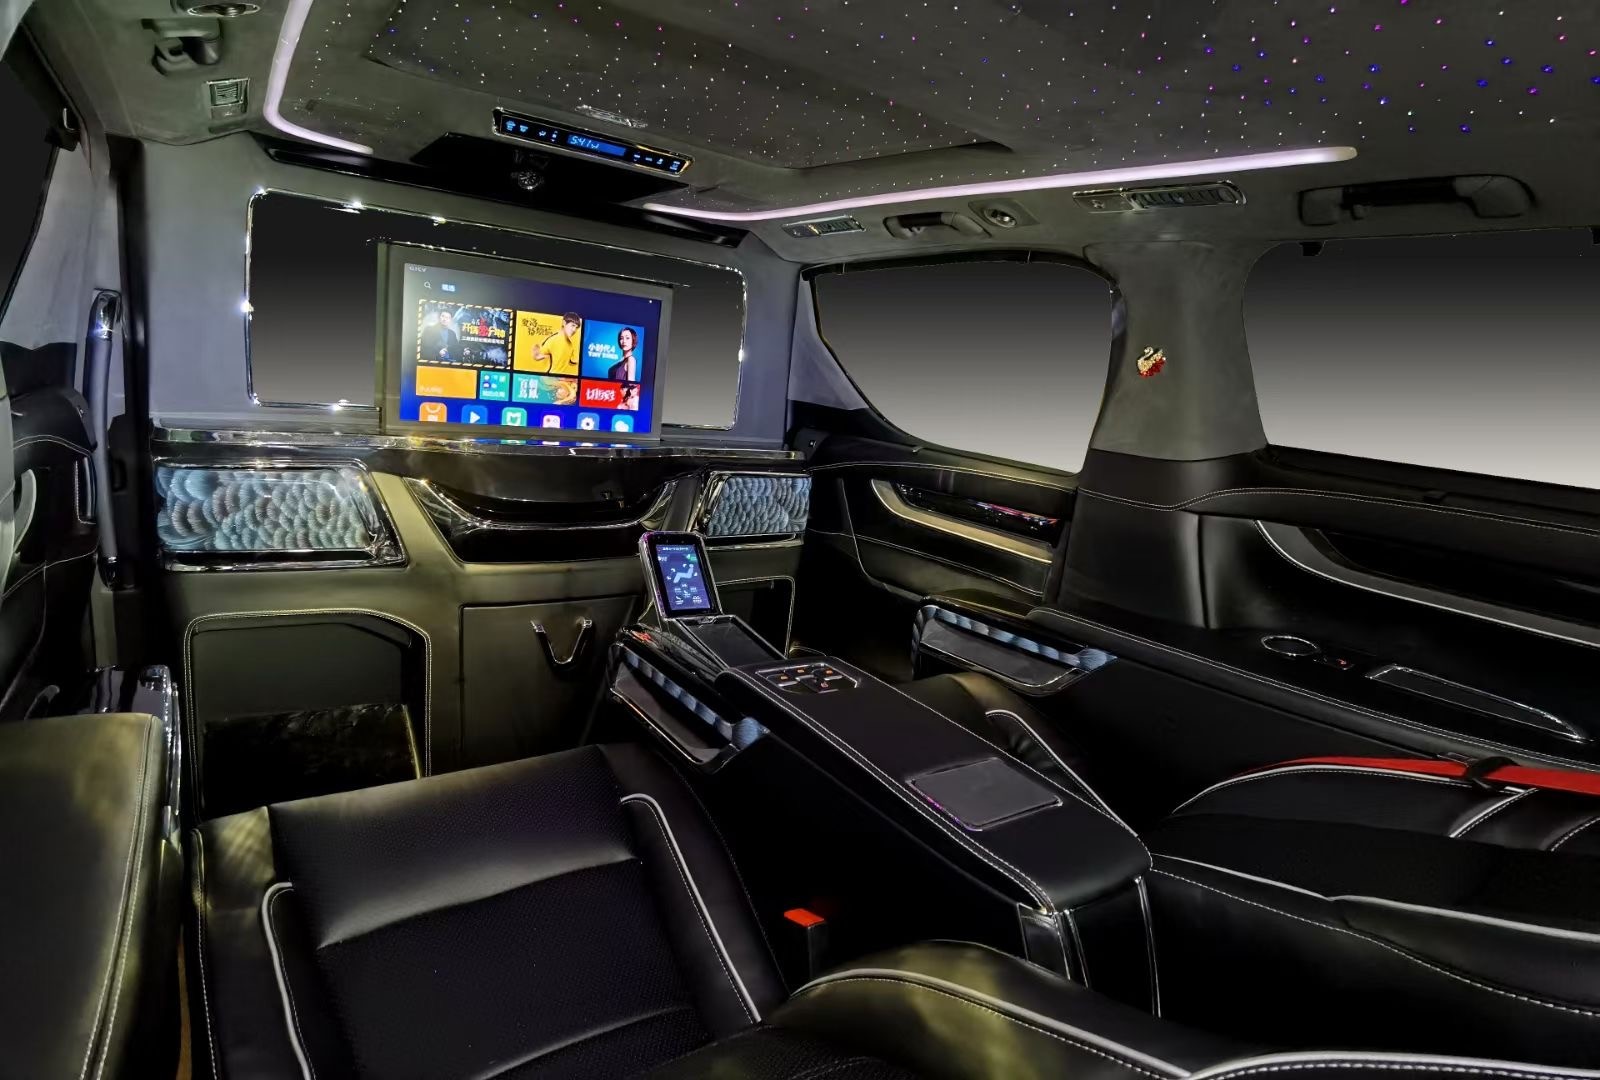 进入驾驶舱你会发现2020款埃尔法蒙娜丽莎黑天鹅的驾驶舱空间真的很大，驾驶座虽然都是司机的，不过新款埃尔法却没有降低它的舒适性，座椅造型不仅宽大，而且填充物也很柔软，即便是长途驾驶也不会觉得很疲劳。